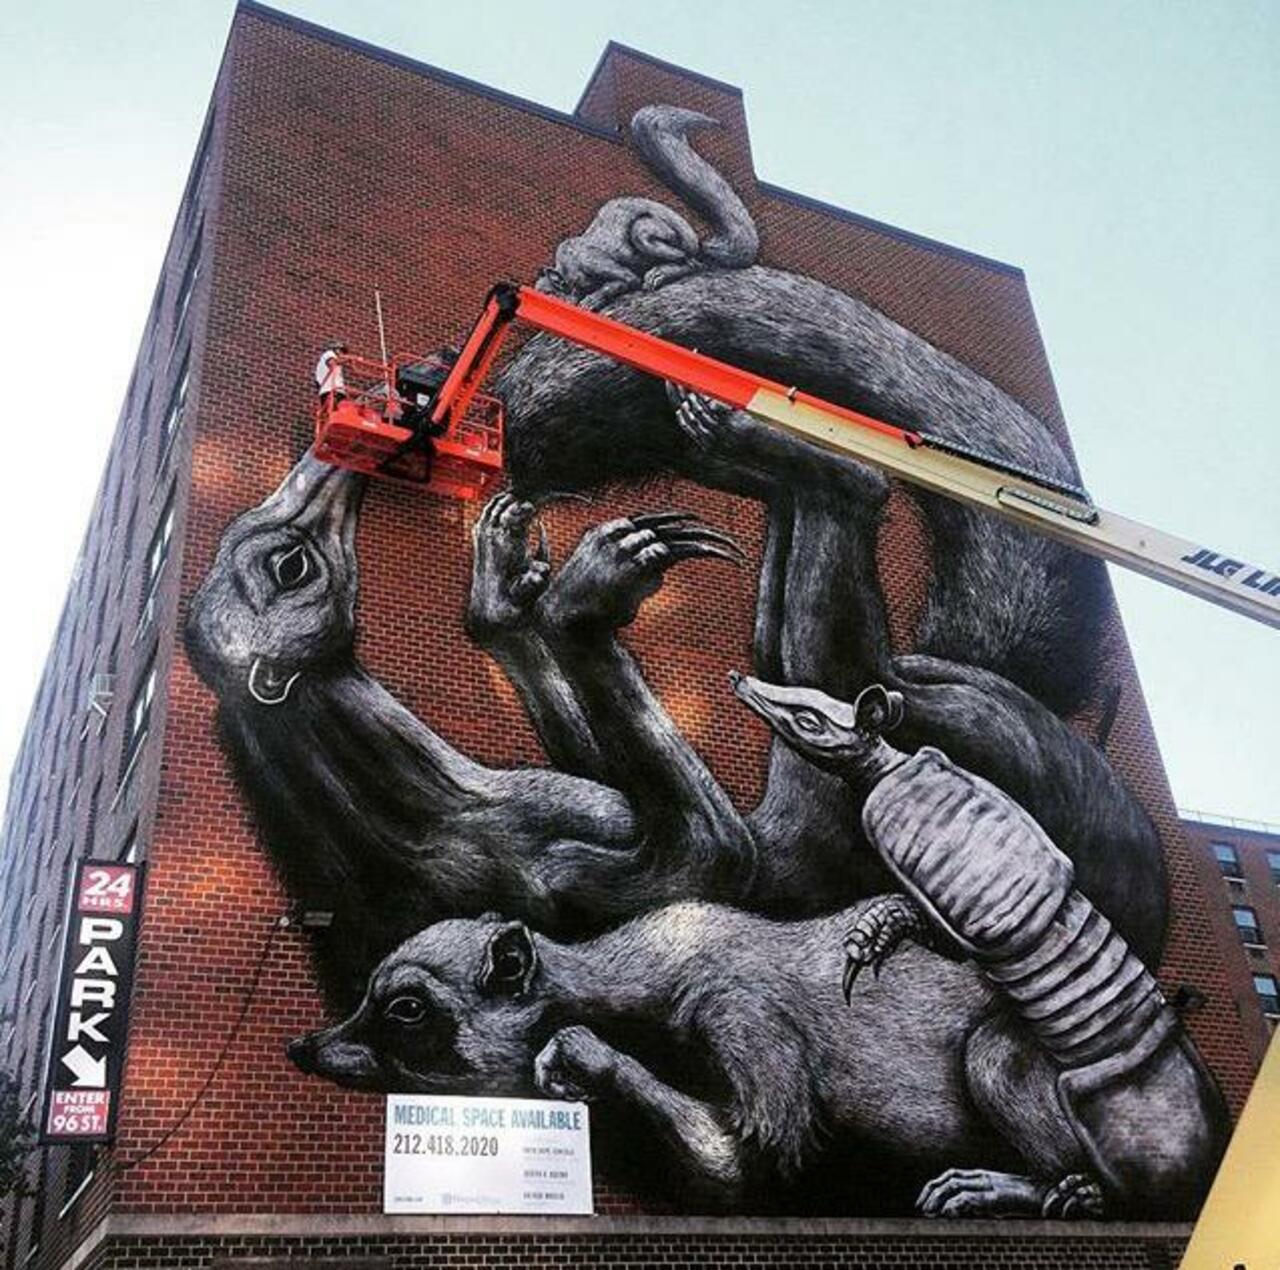 Street Art in progress by ROA in NYC

#art #graffiti #mural #streetart http://t.co/wNCOCXNM1y